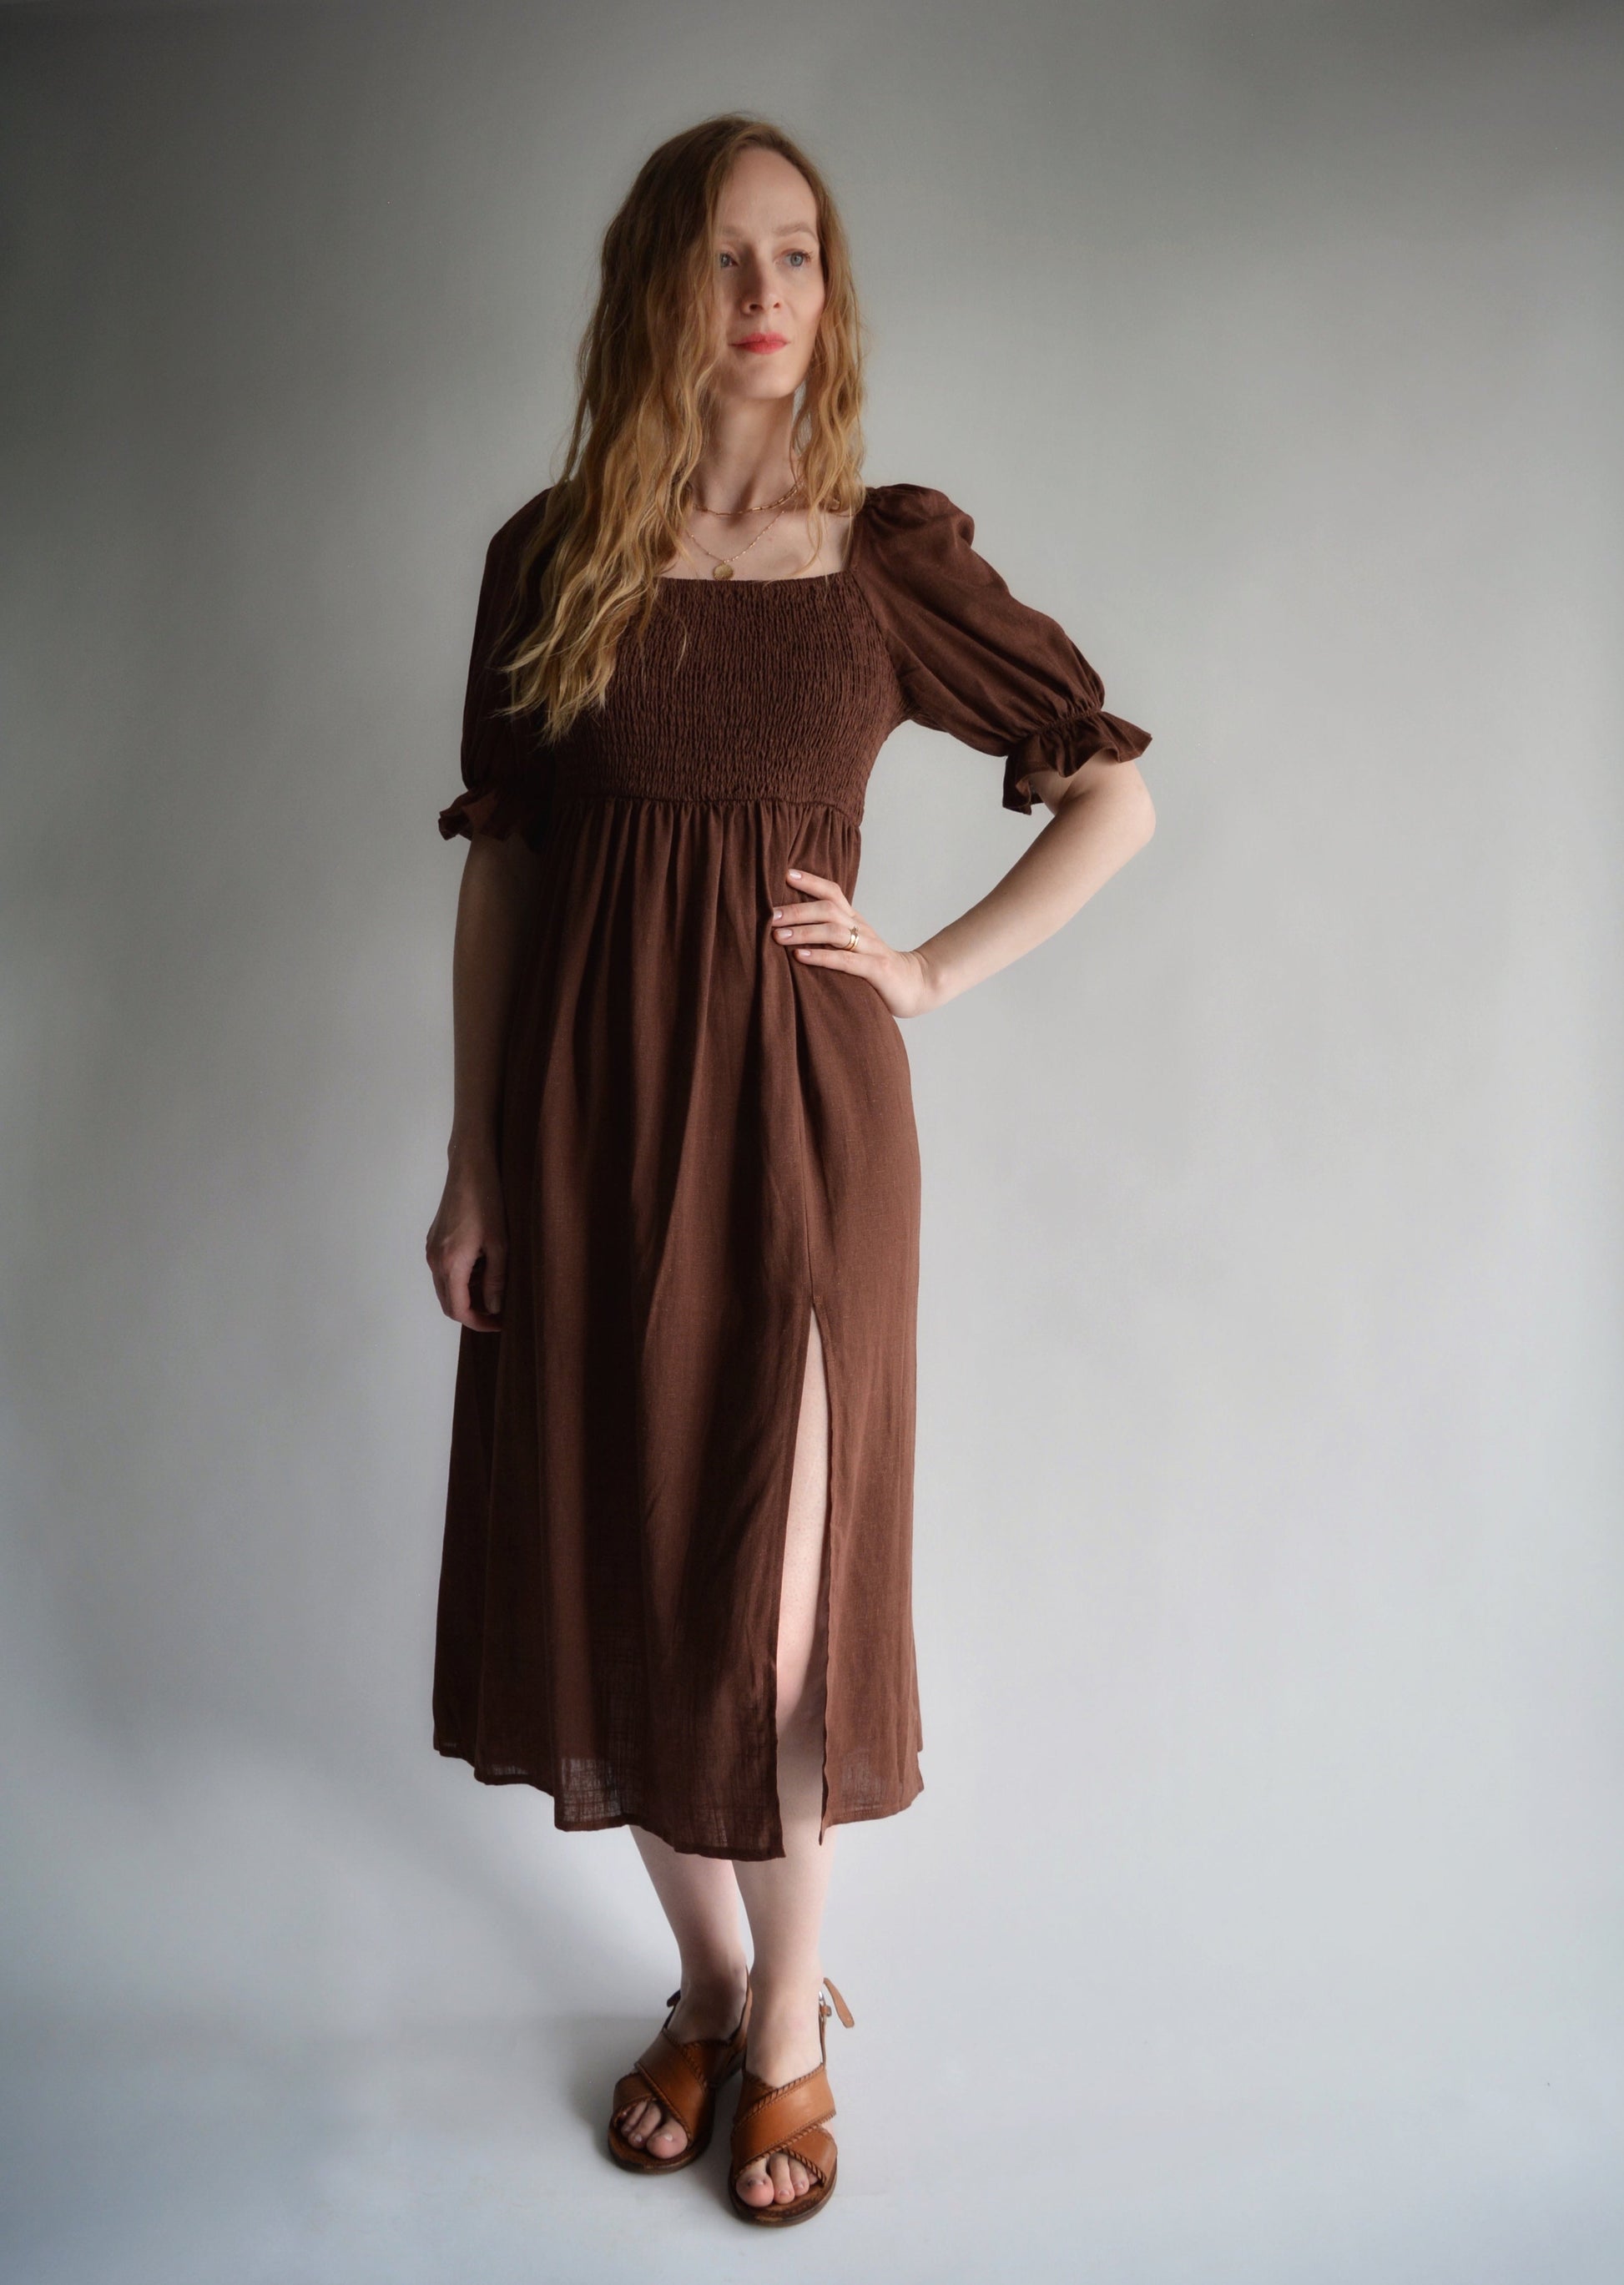 Linen Dress in Brown color